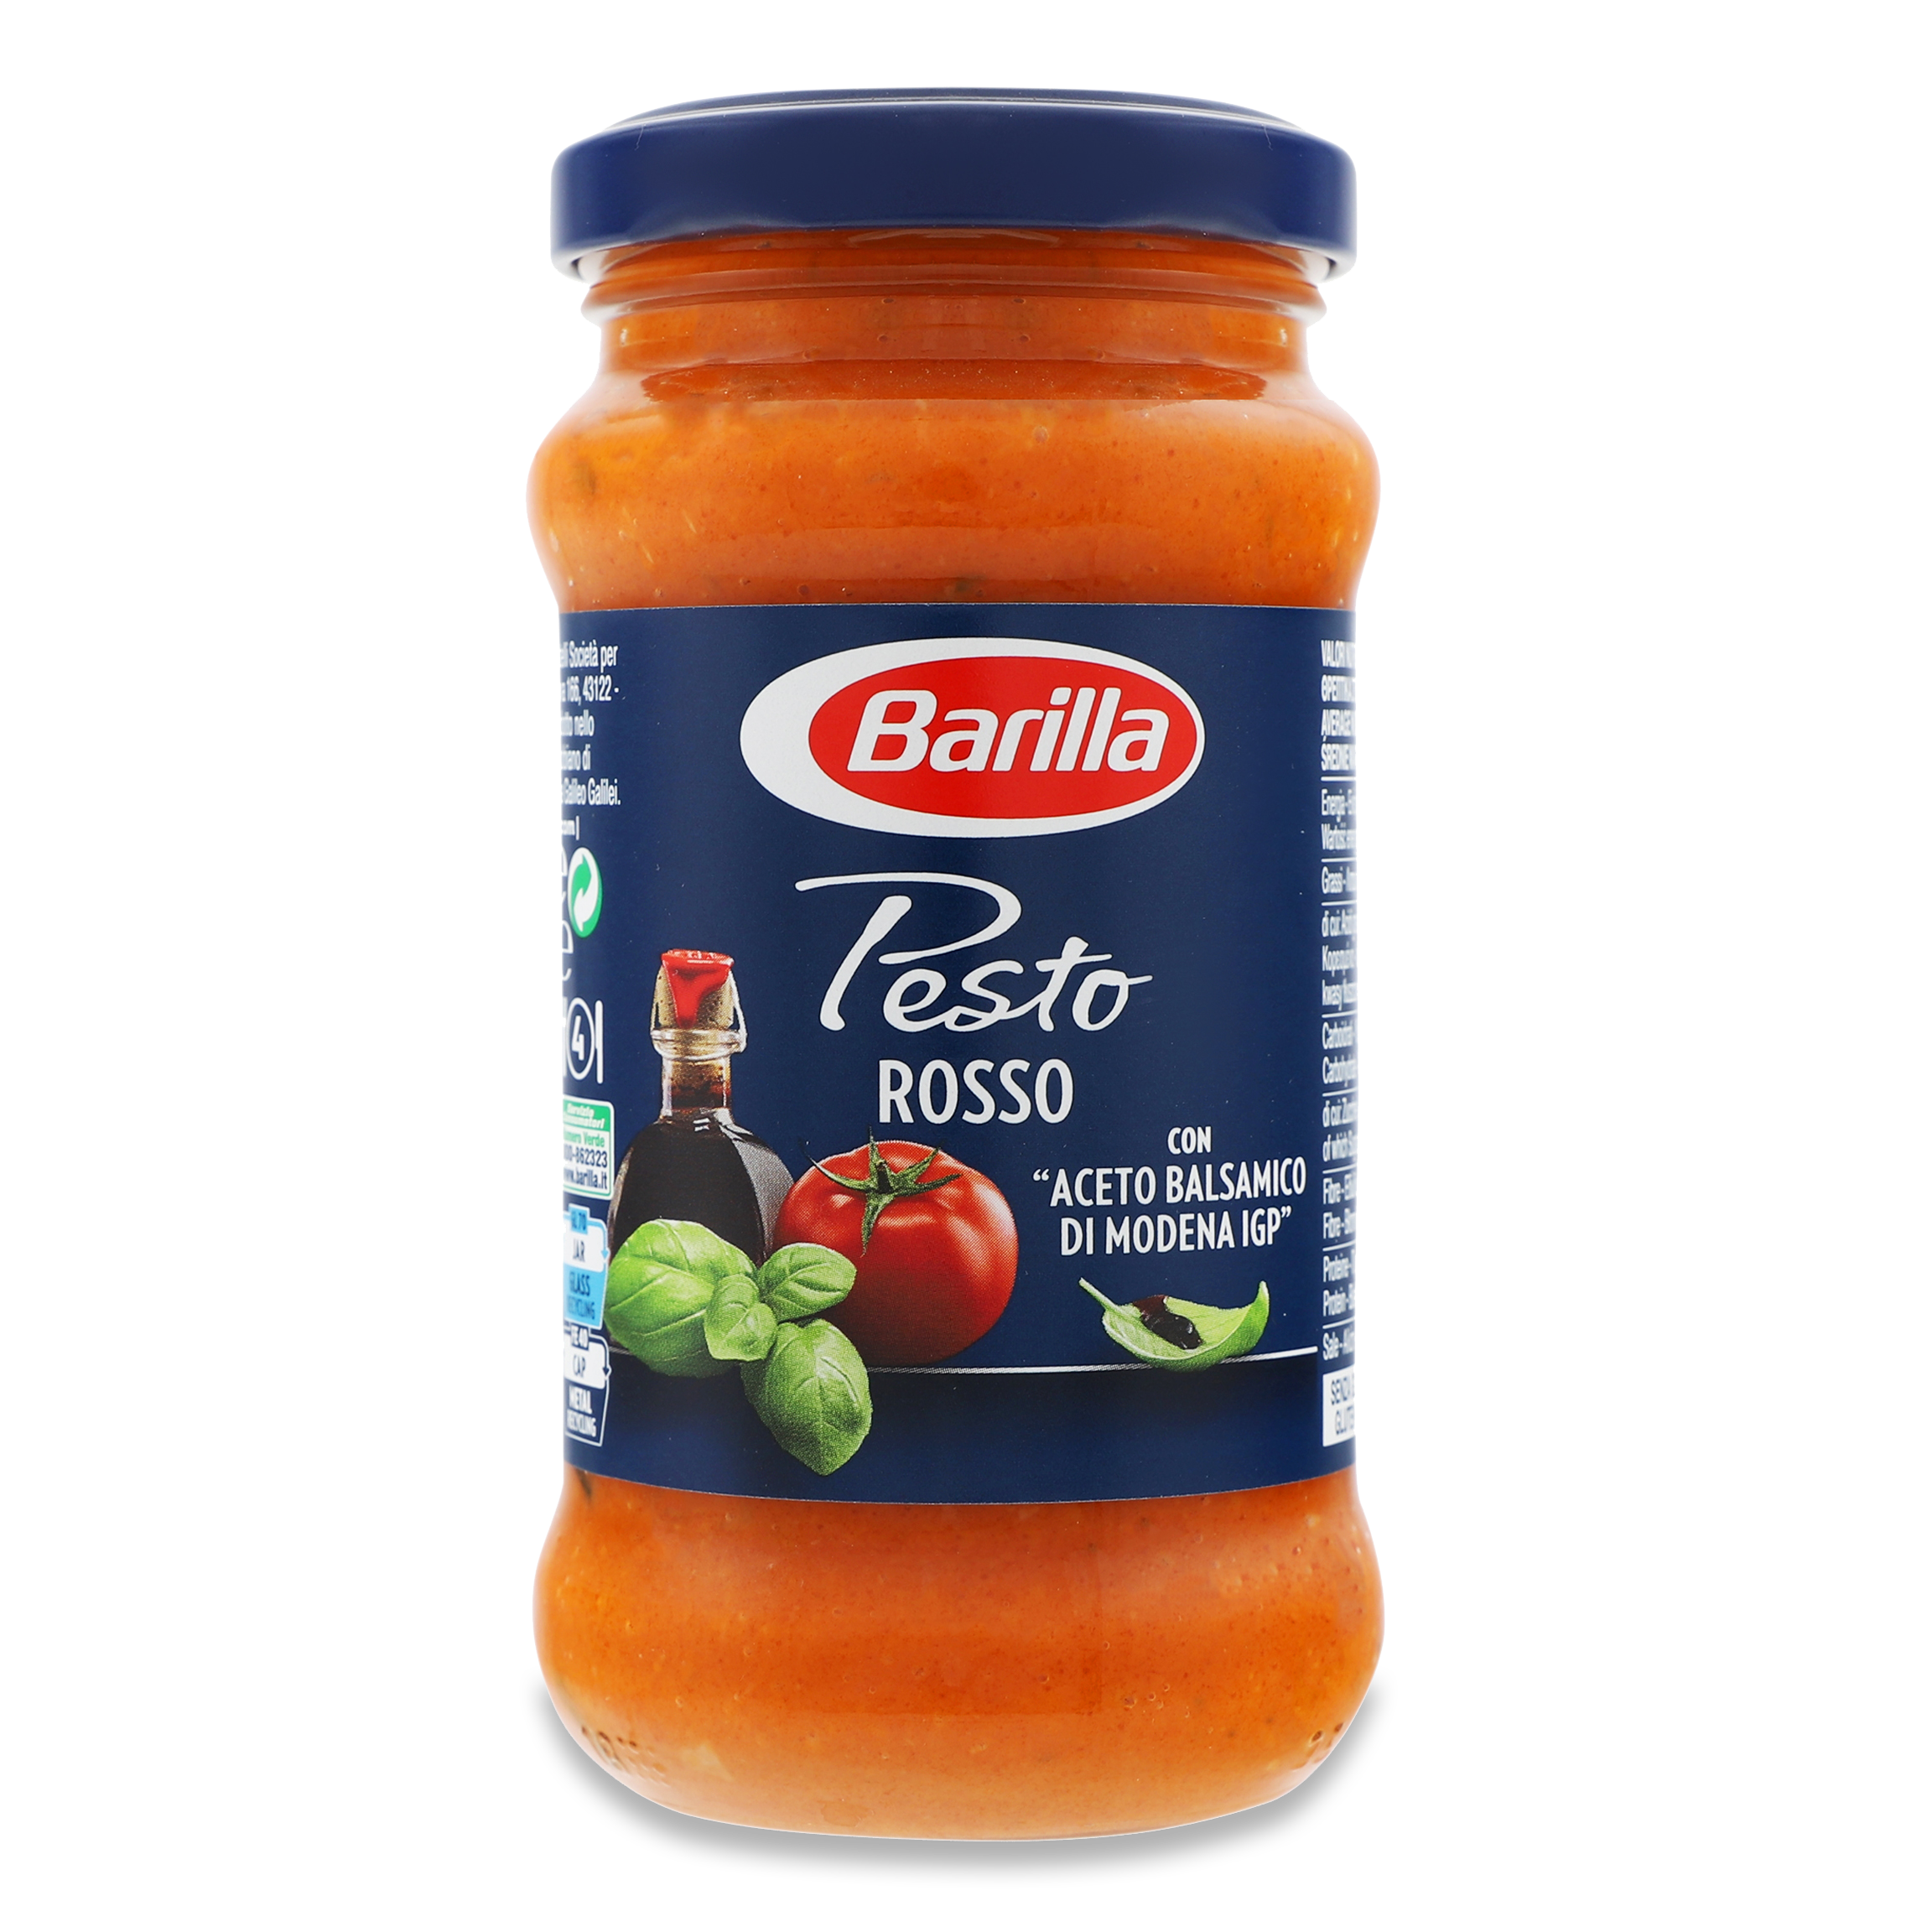 Barіlla Pesto Rosso tomato sauce 190g